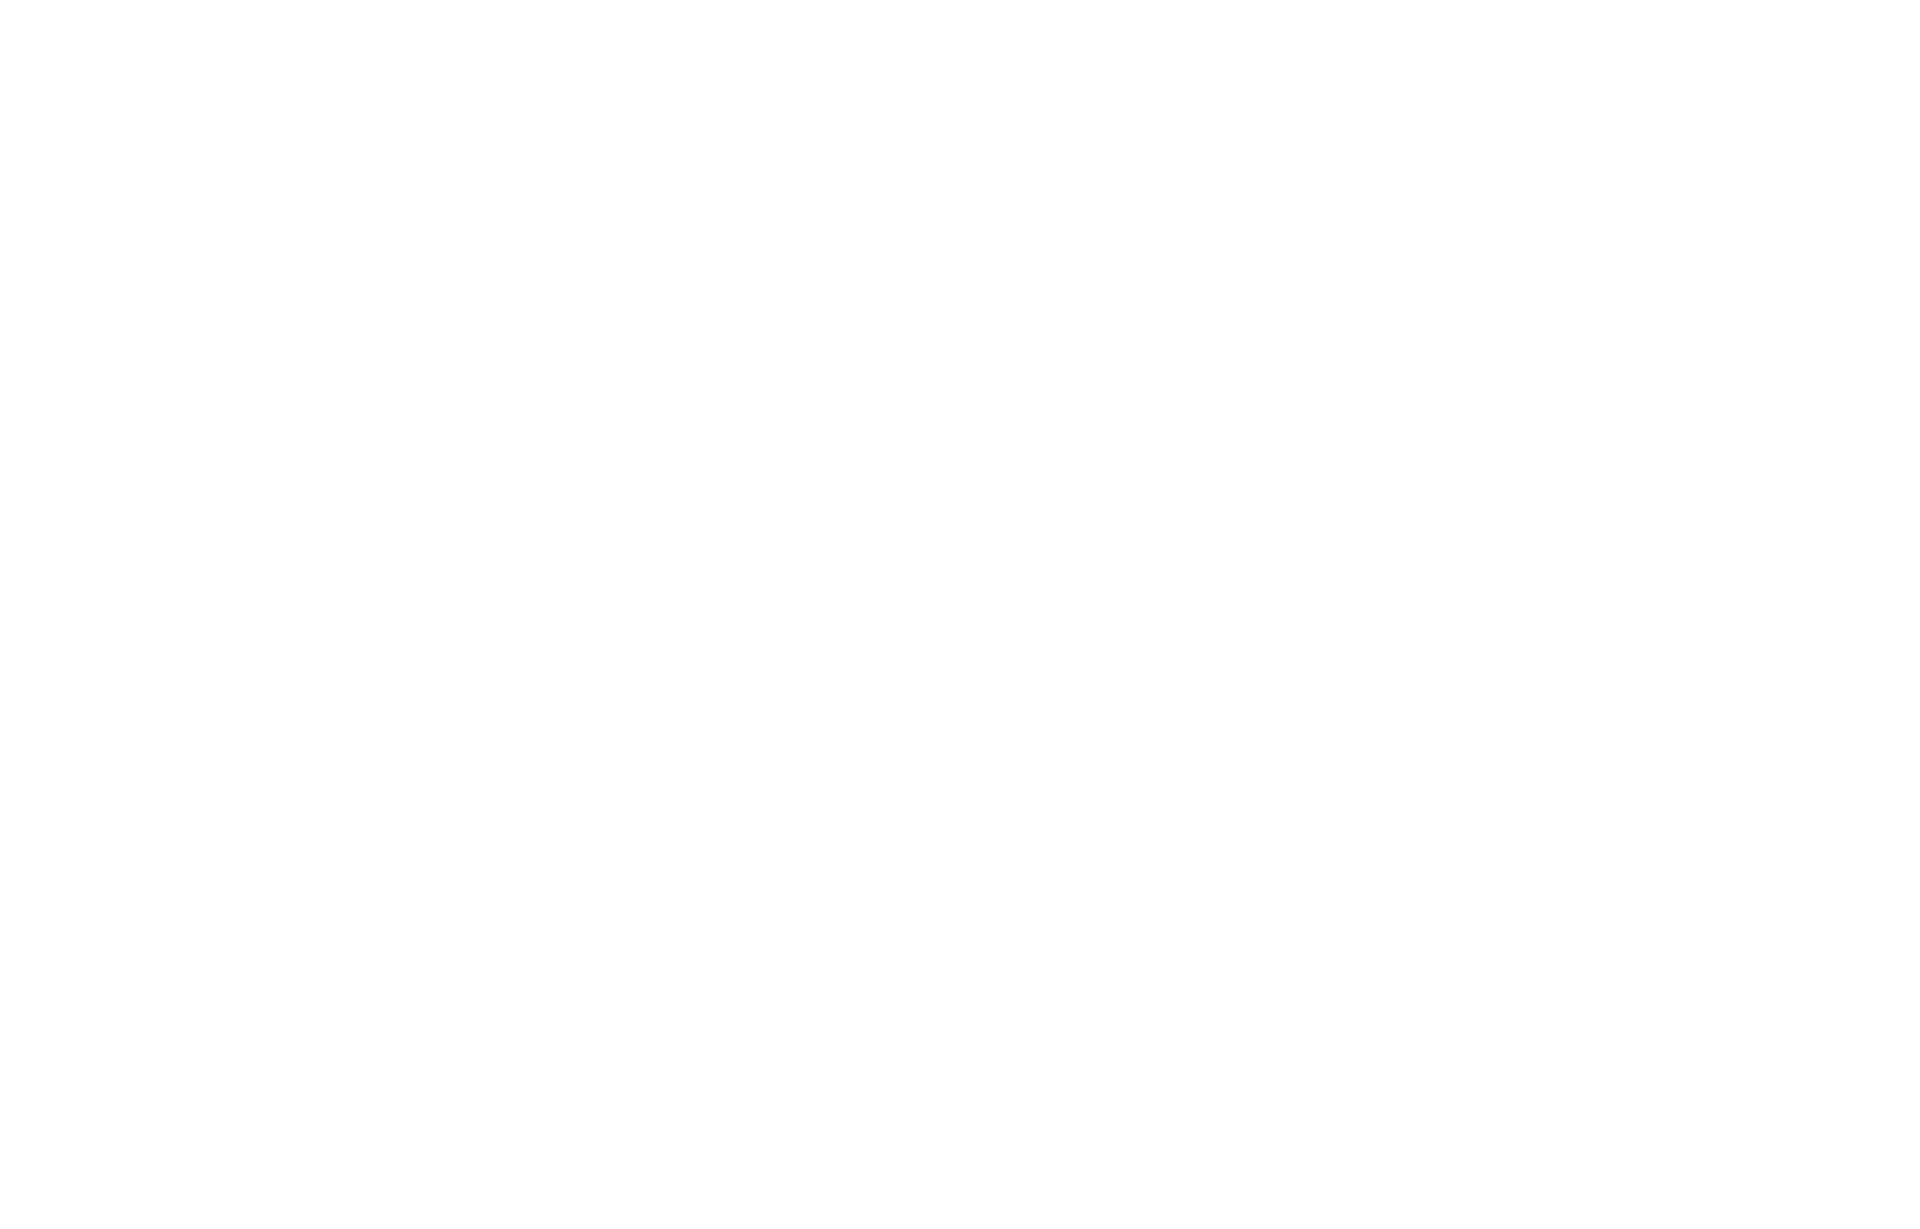 Coop Sapporo